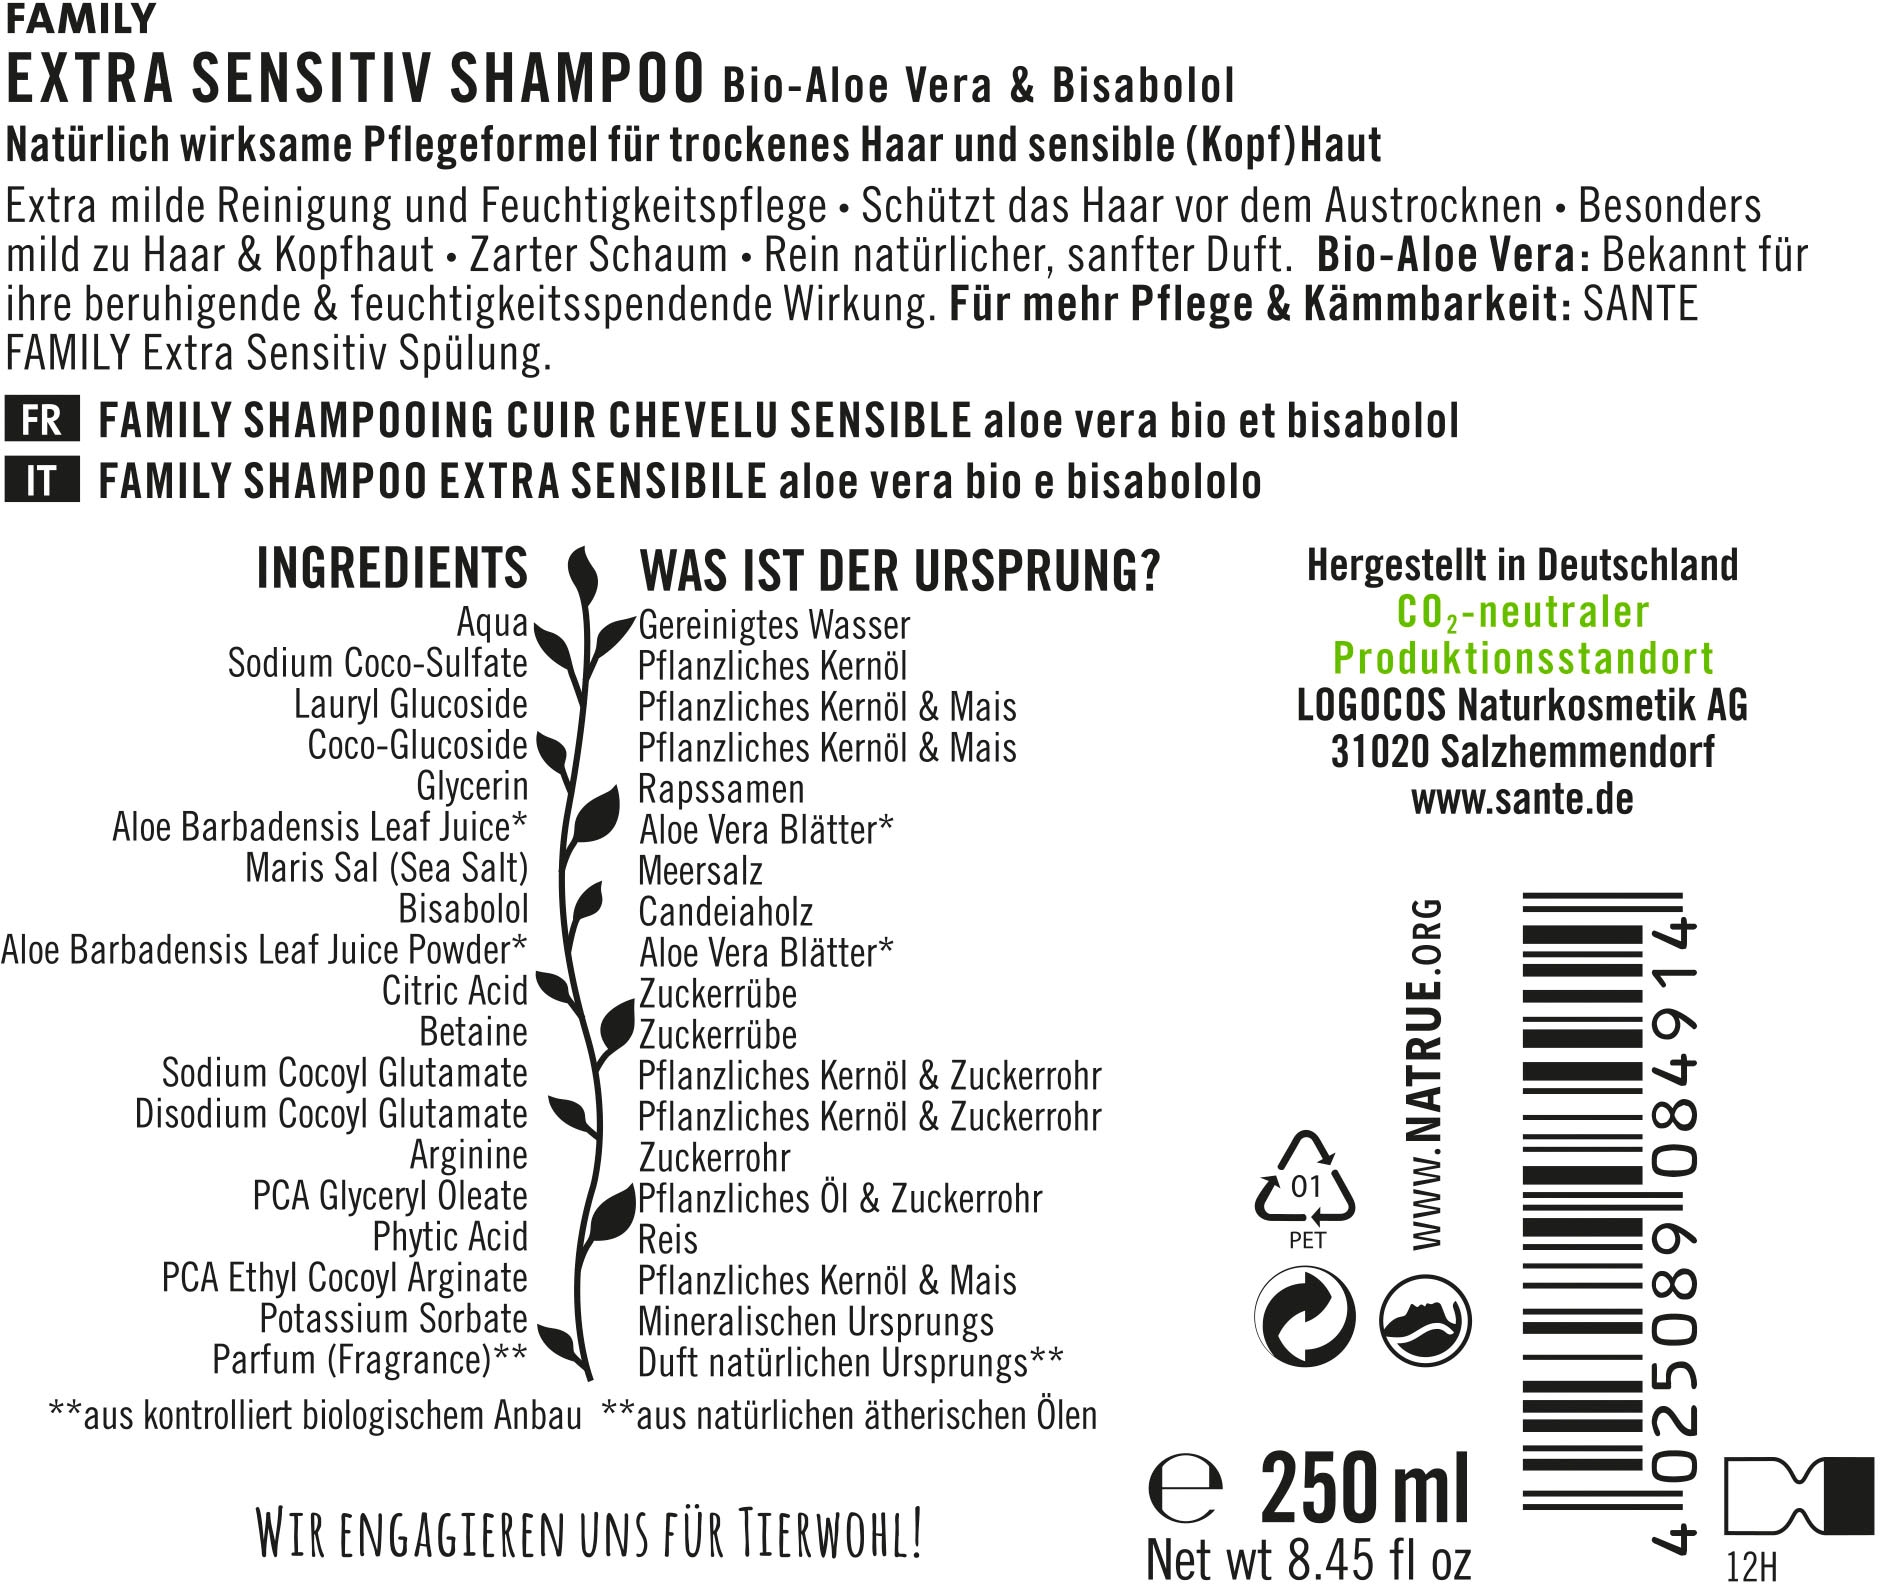 Sensitiv »FAMILY Haarshampoo Extra SANTE Shampoo«